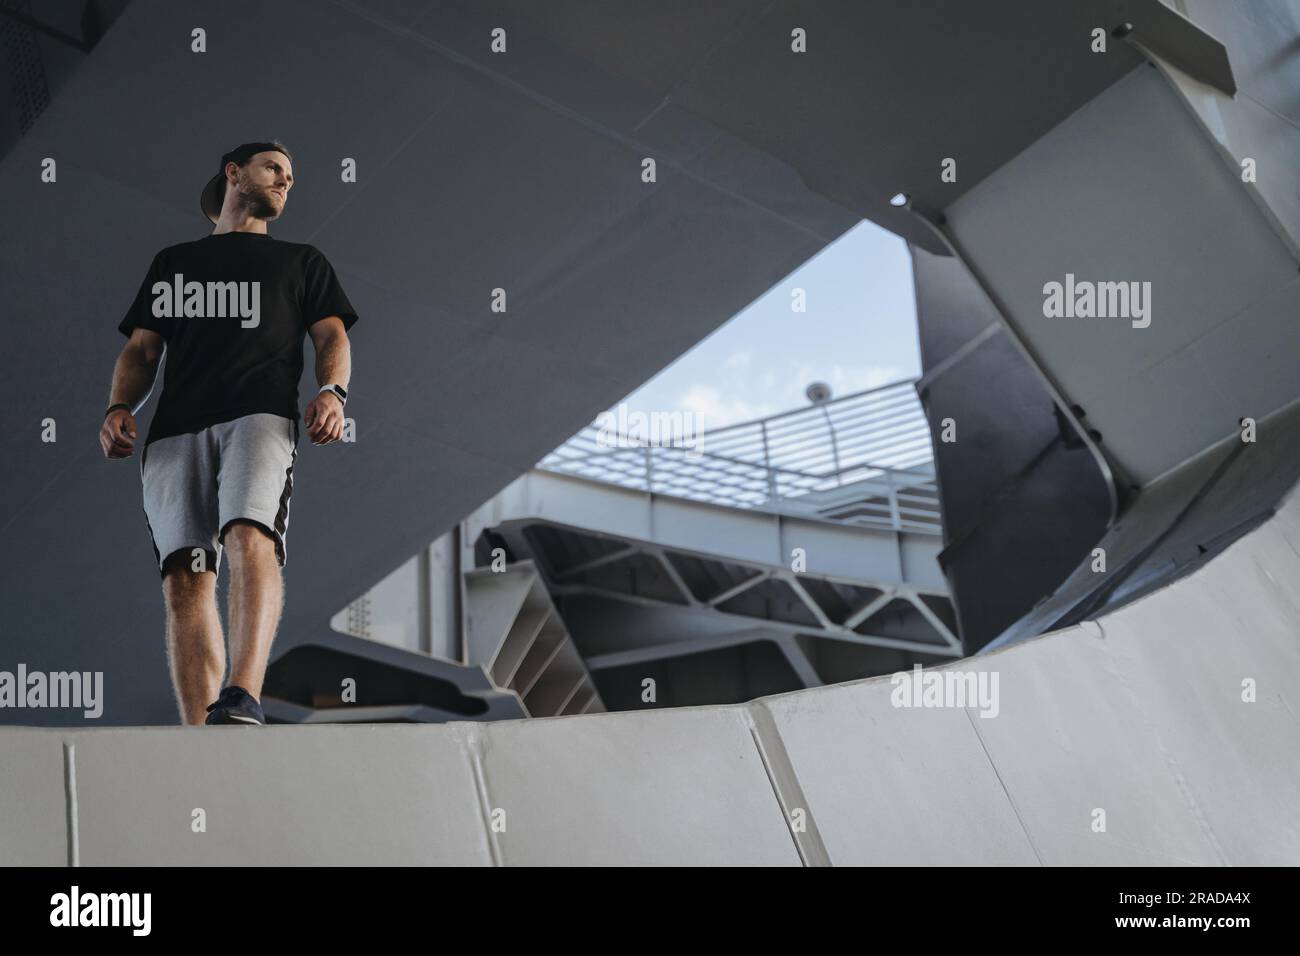 Ritratto di un atleta freerunning in piedi sul bordo della struttura metallica. Sto cercando un posto per la tua pubblicità Foto Stock